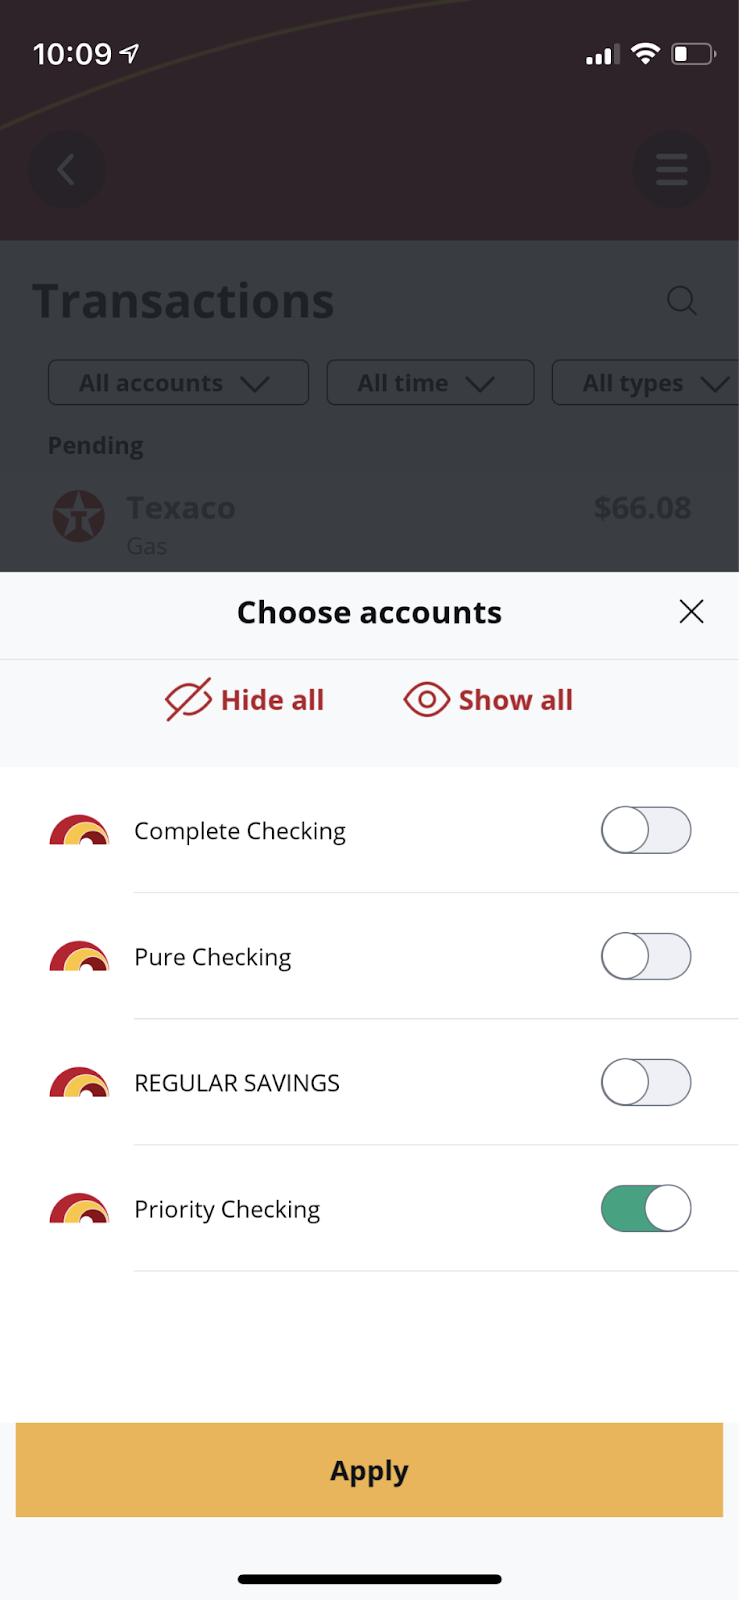 Screen shot of Choose accounts options